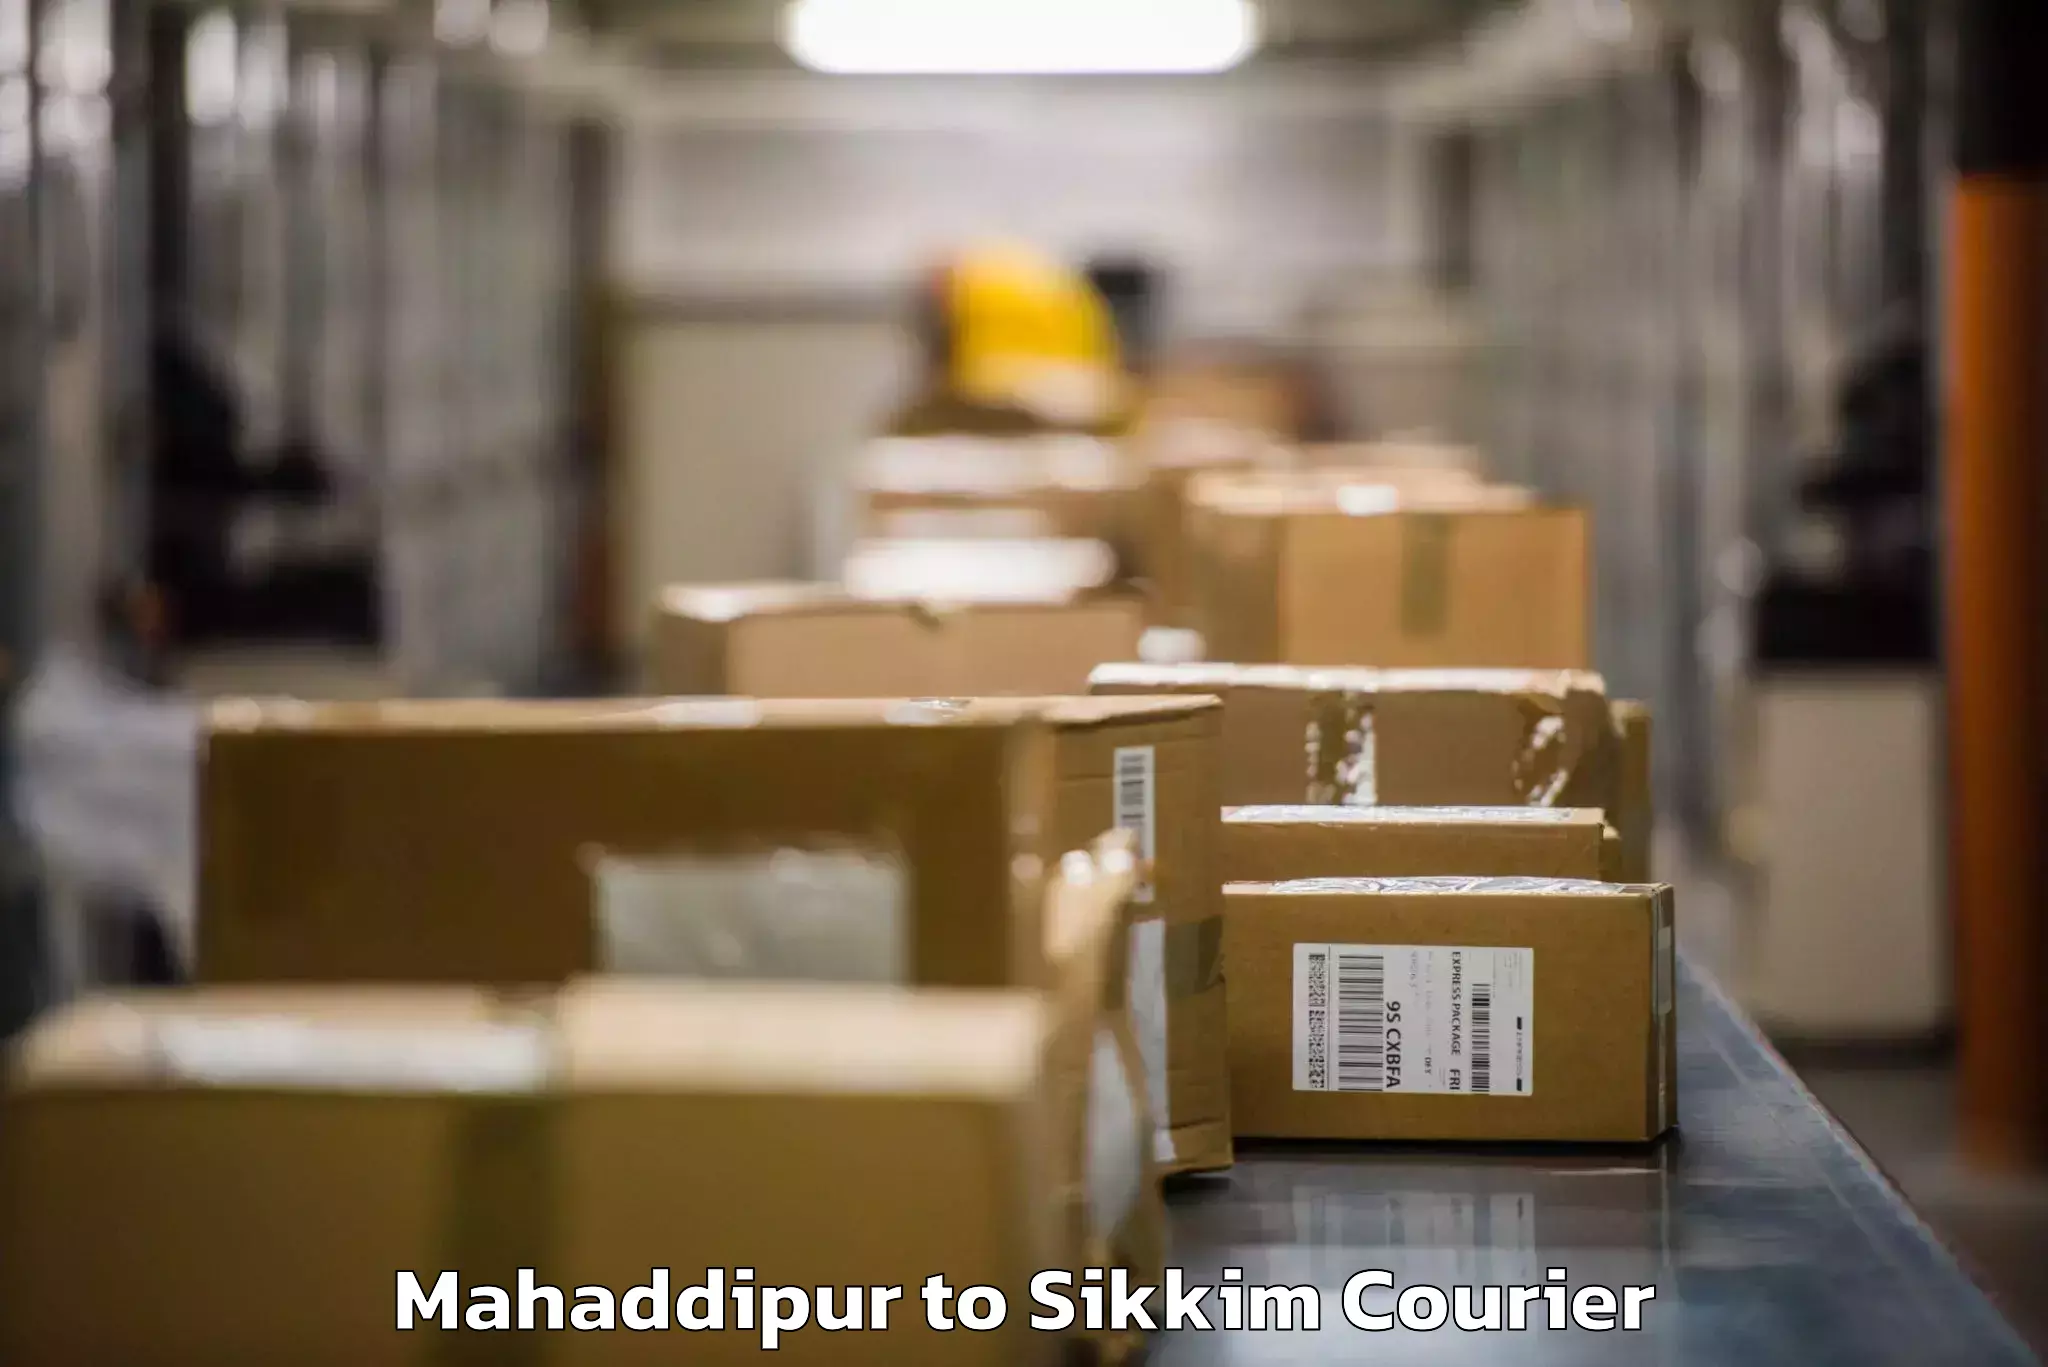 Baggage shipping quotes Mahaddipur to Rangpo